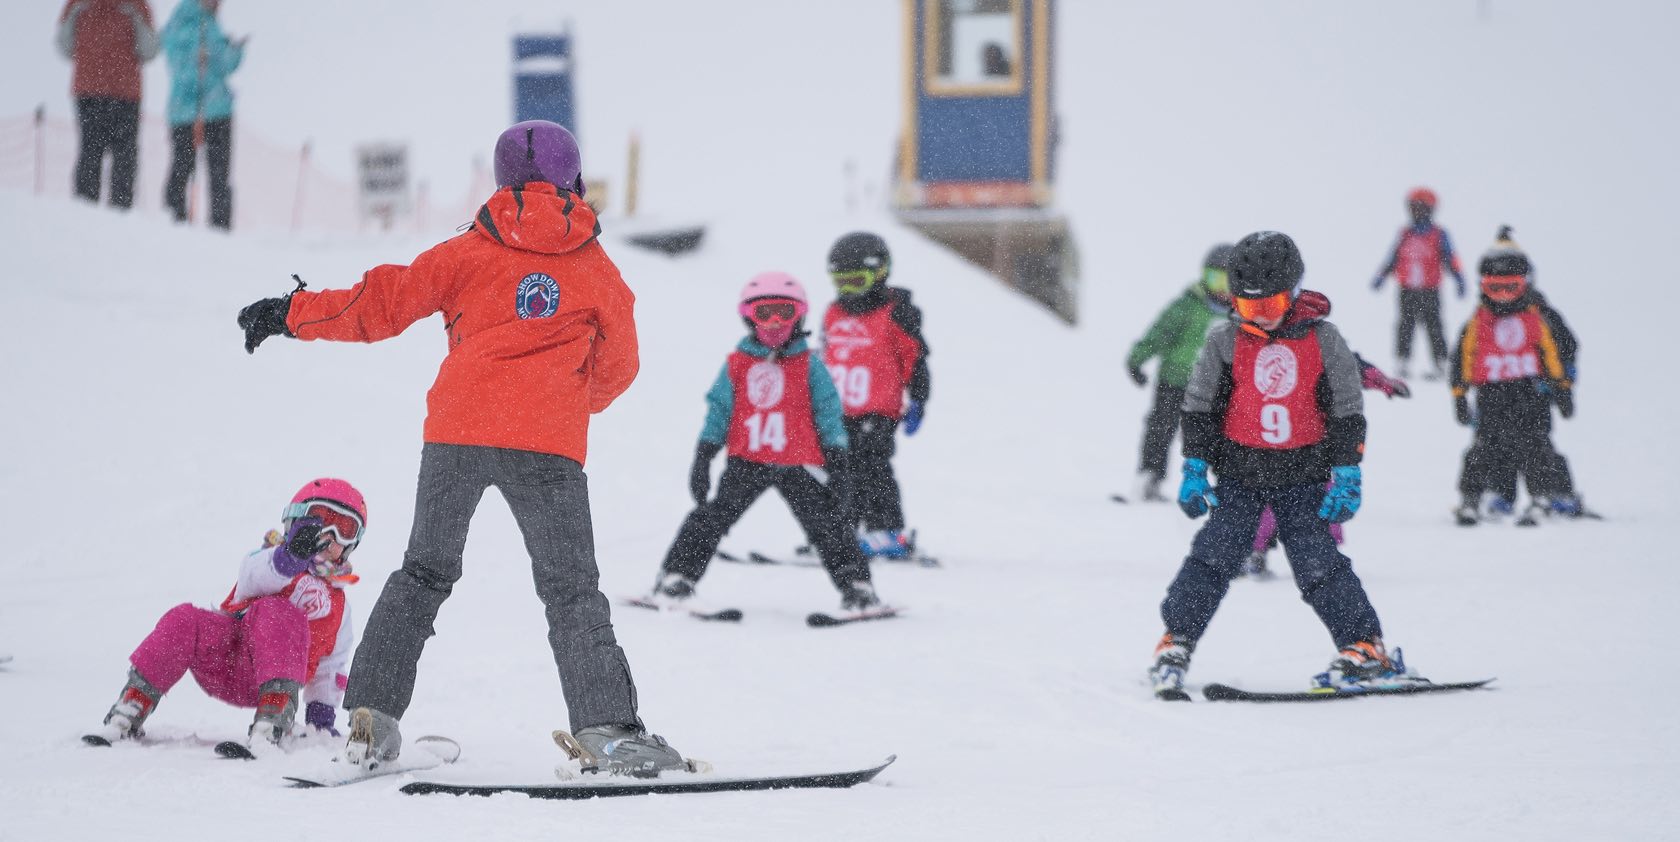 ski instructor teaching lesson at showdown montana